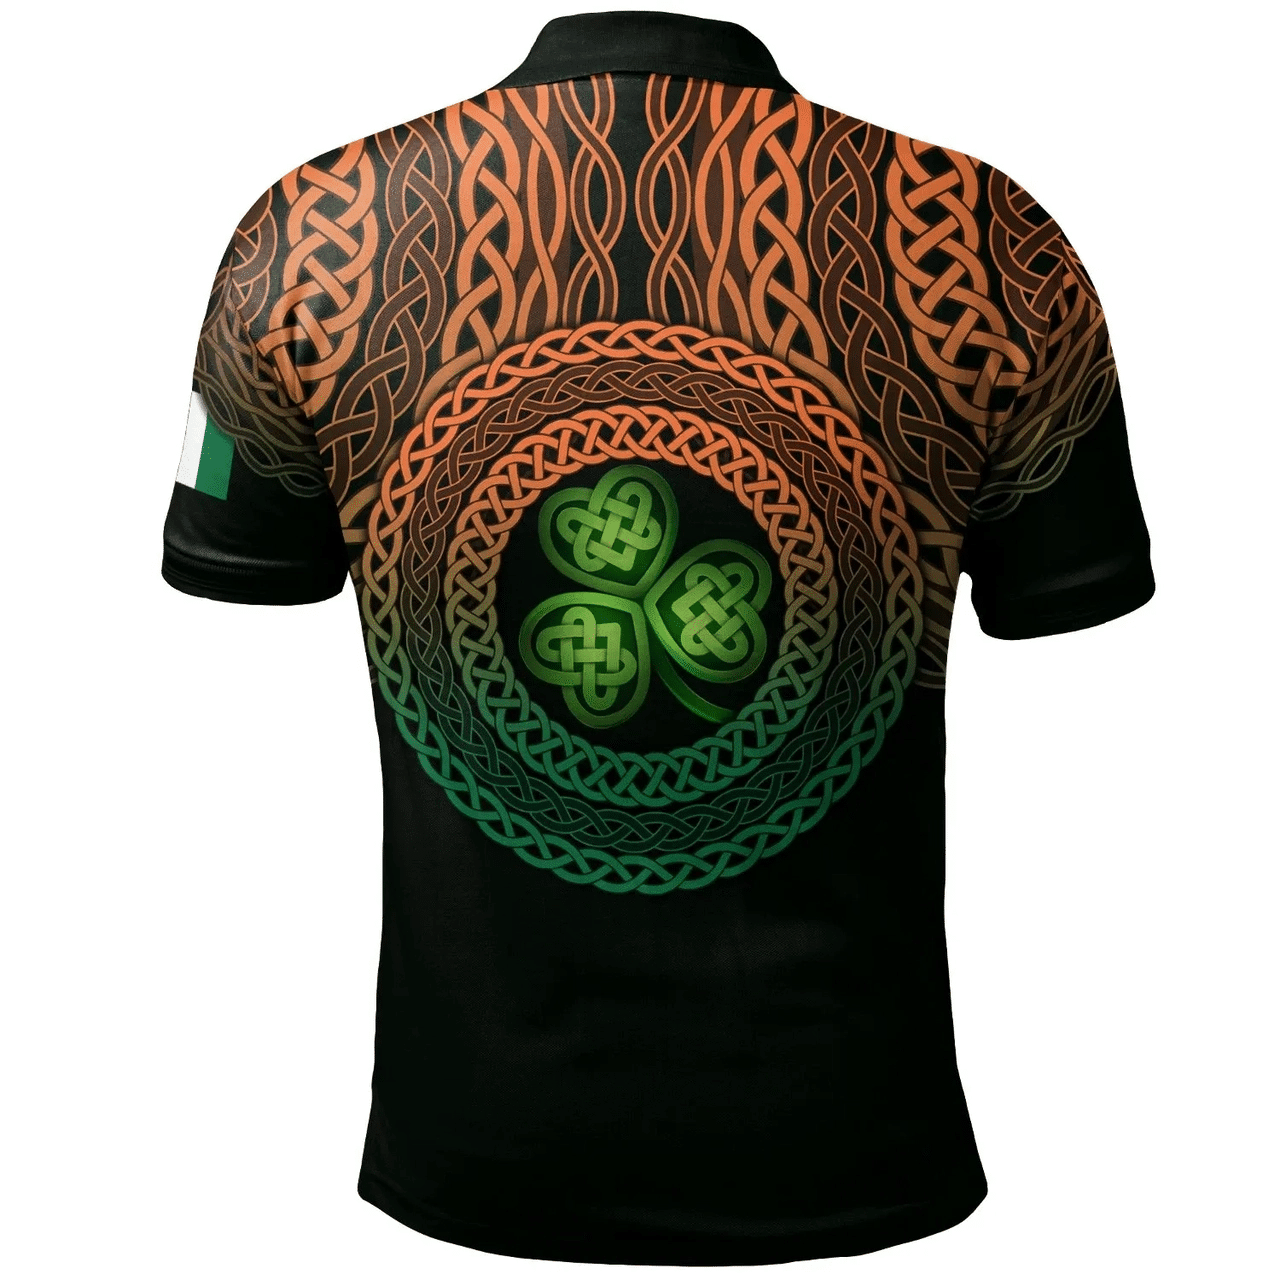 1stIreland Ireland Polo Shirt - Riall or Ryle Irish Family Crest Polo Shirt - Celtic Pride A7 | 1stIreland.com